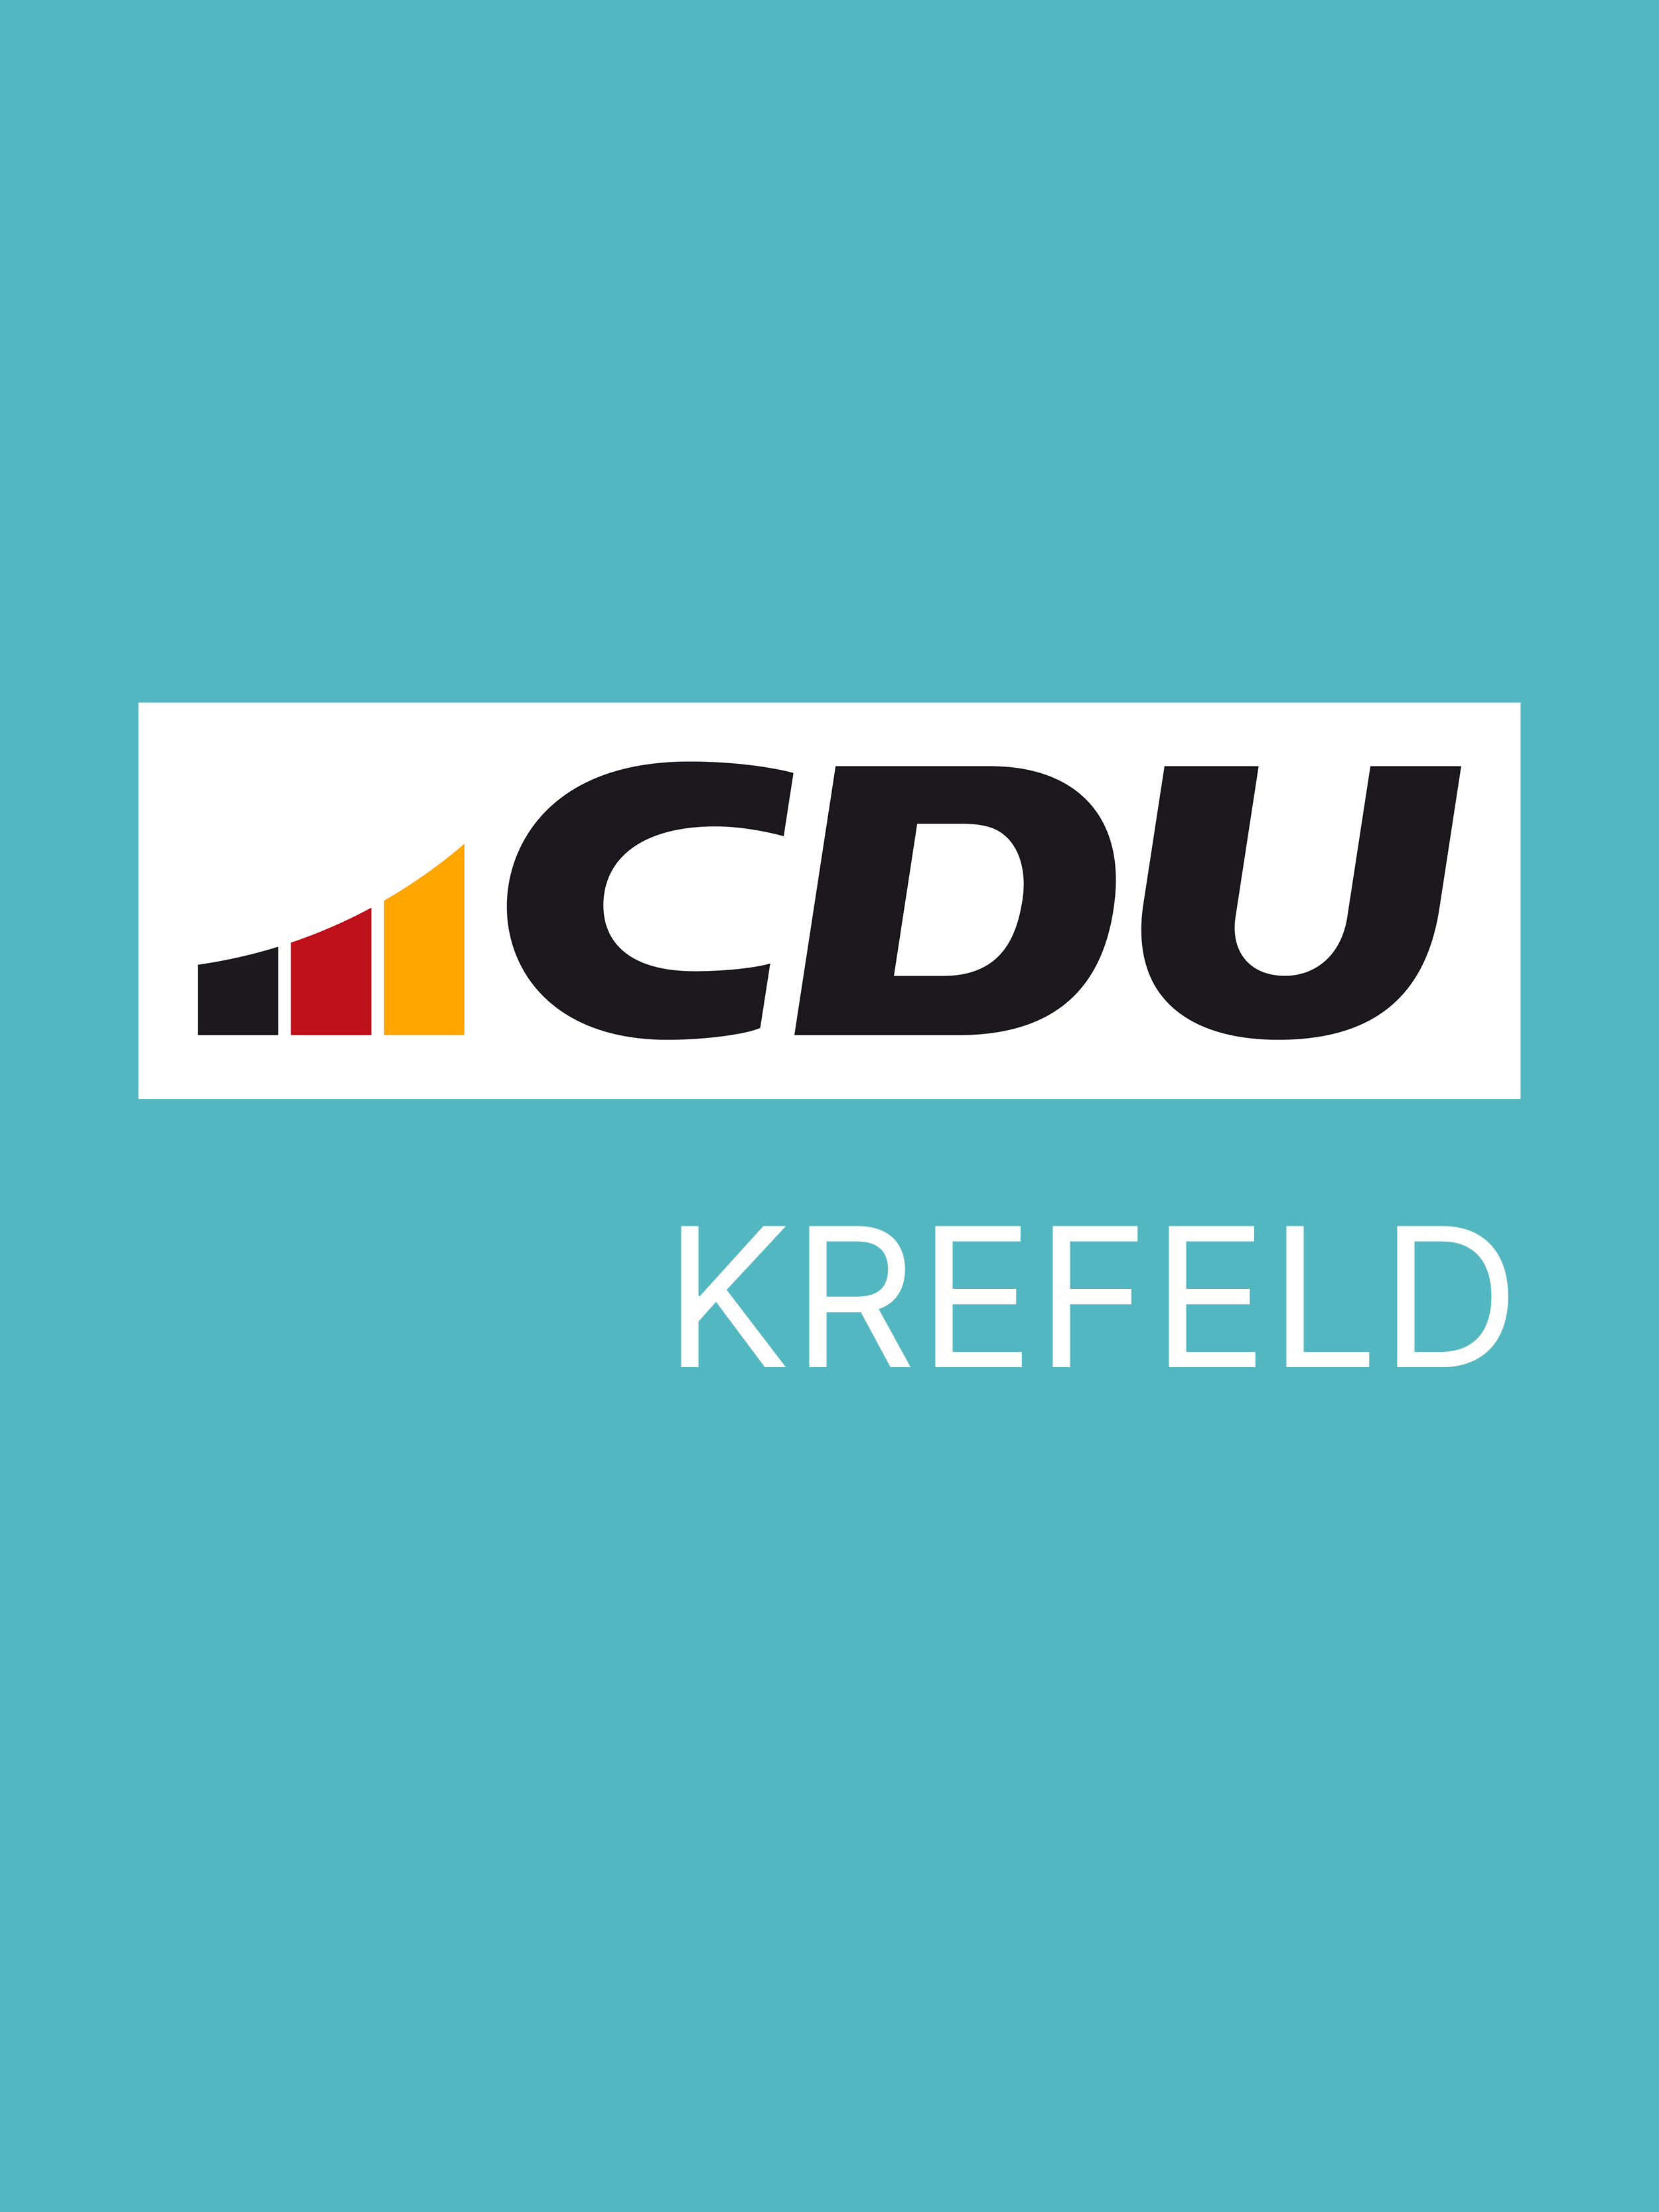 CDU-Krefeld-Dummybild-Personen